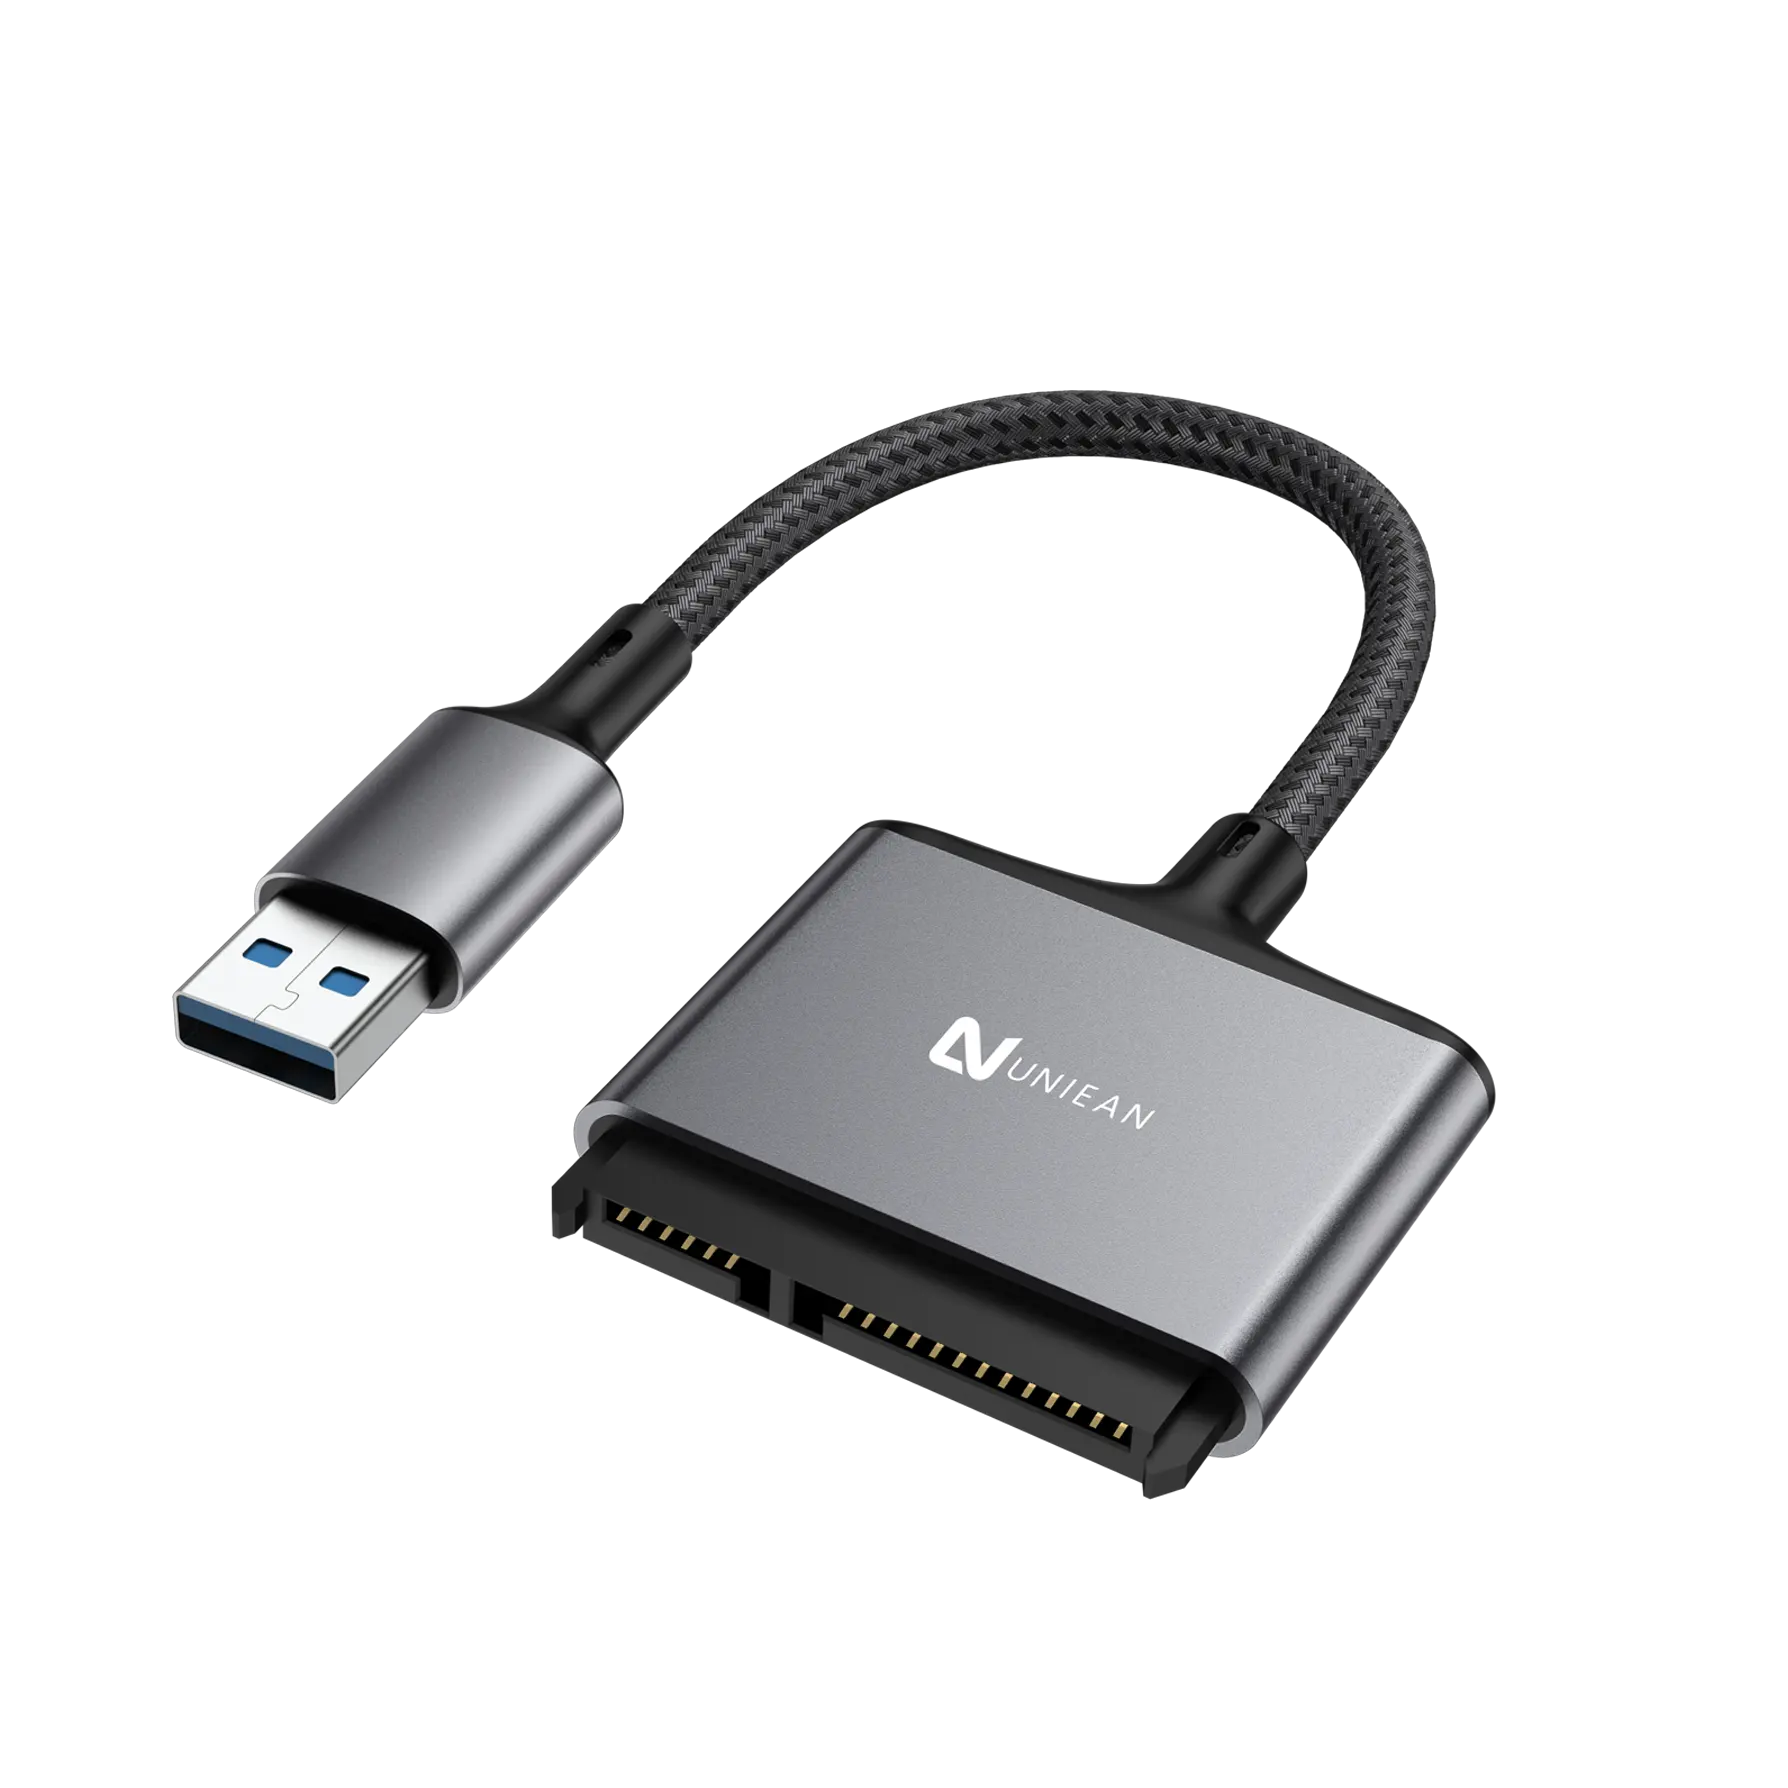 Uniean Máy Tính Xách Tay USB 3.0 Để SATA Bên Ngoài Chuyển Đổi Cáp Cho 2.5 "SATA Ổ Đĩa Cứng Bên Ngoài Bộ Chuyển Đổi USB3.0 Để SATA 2.5 Cáp